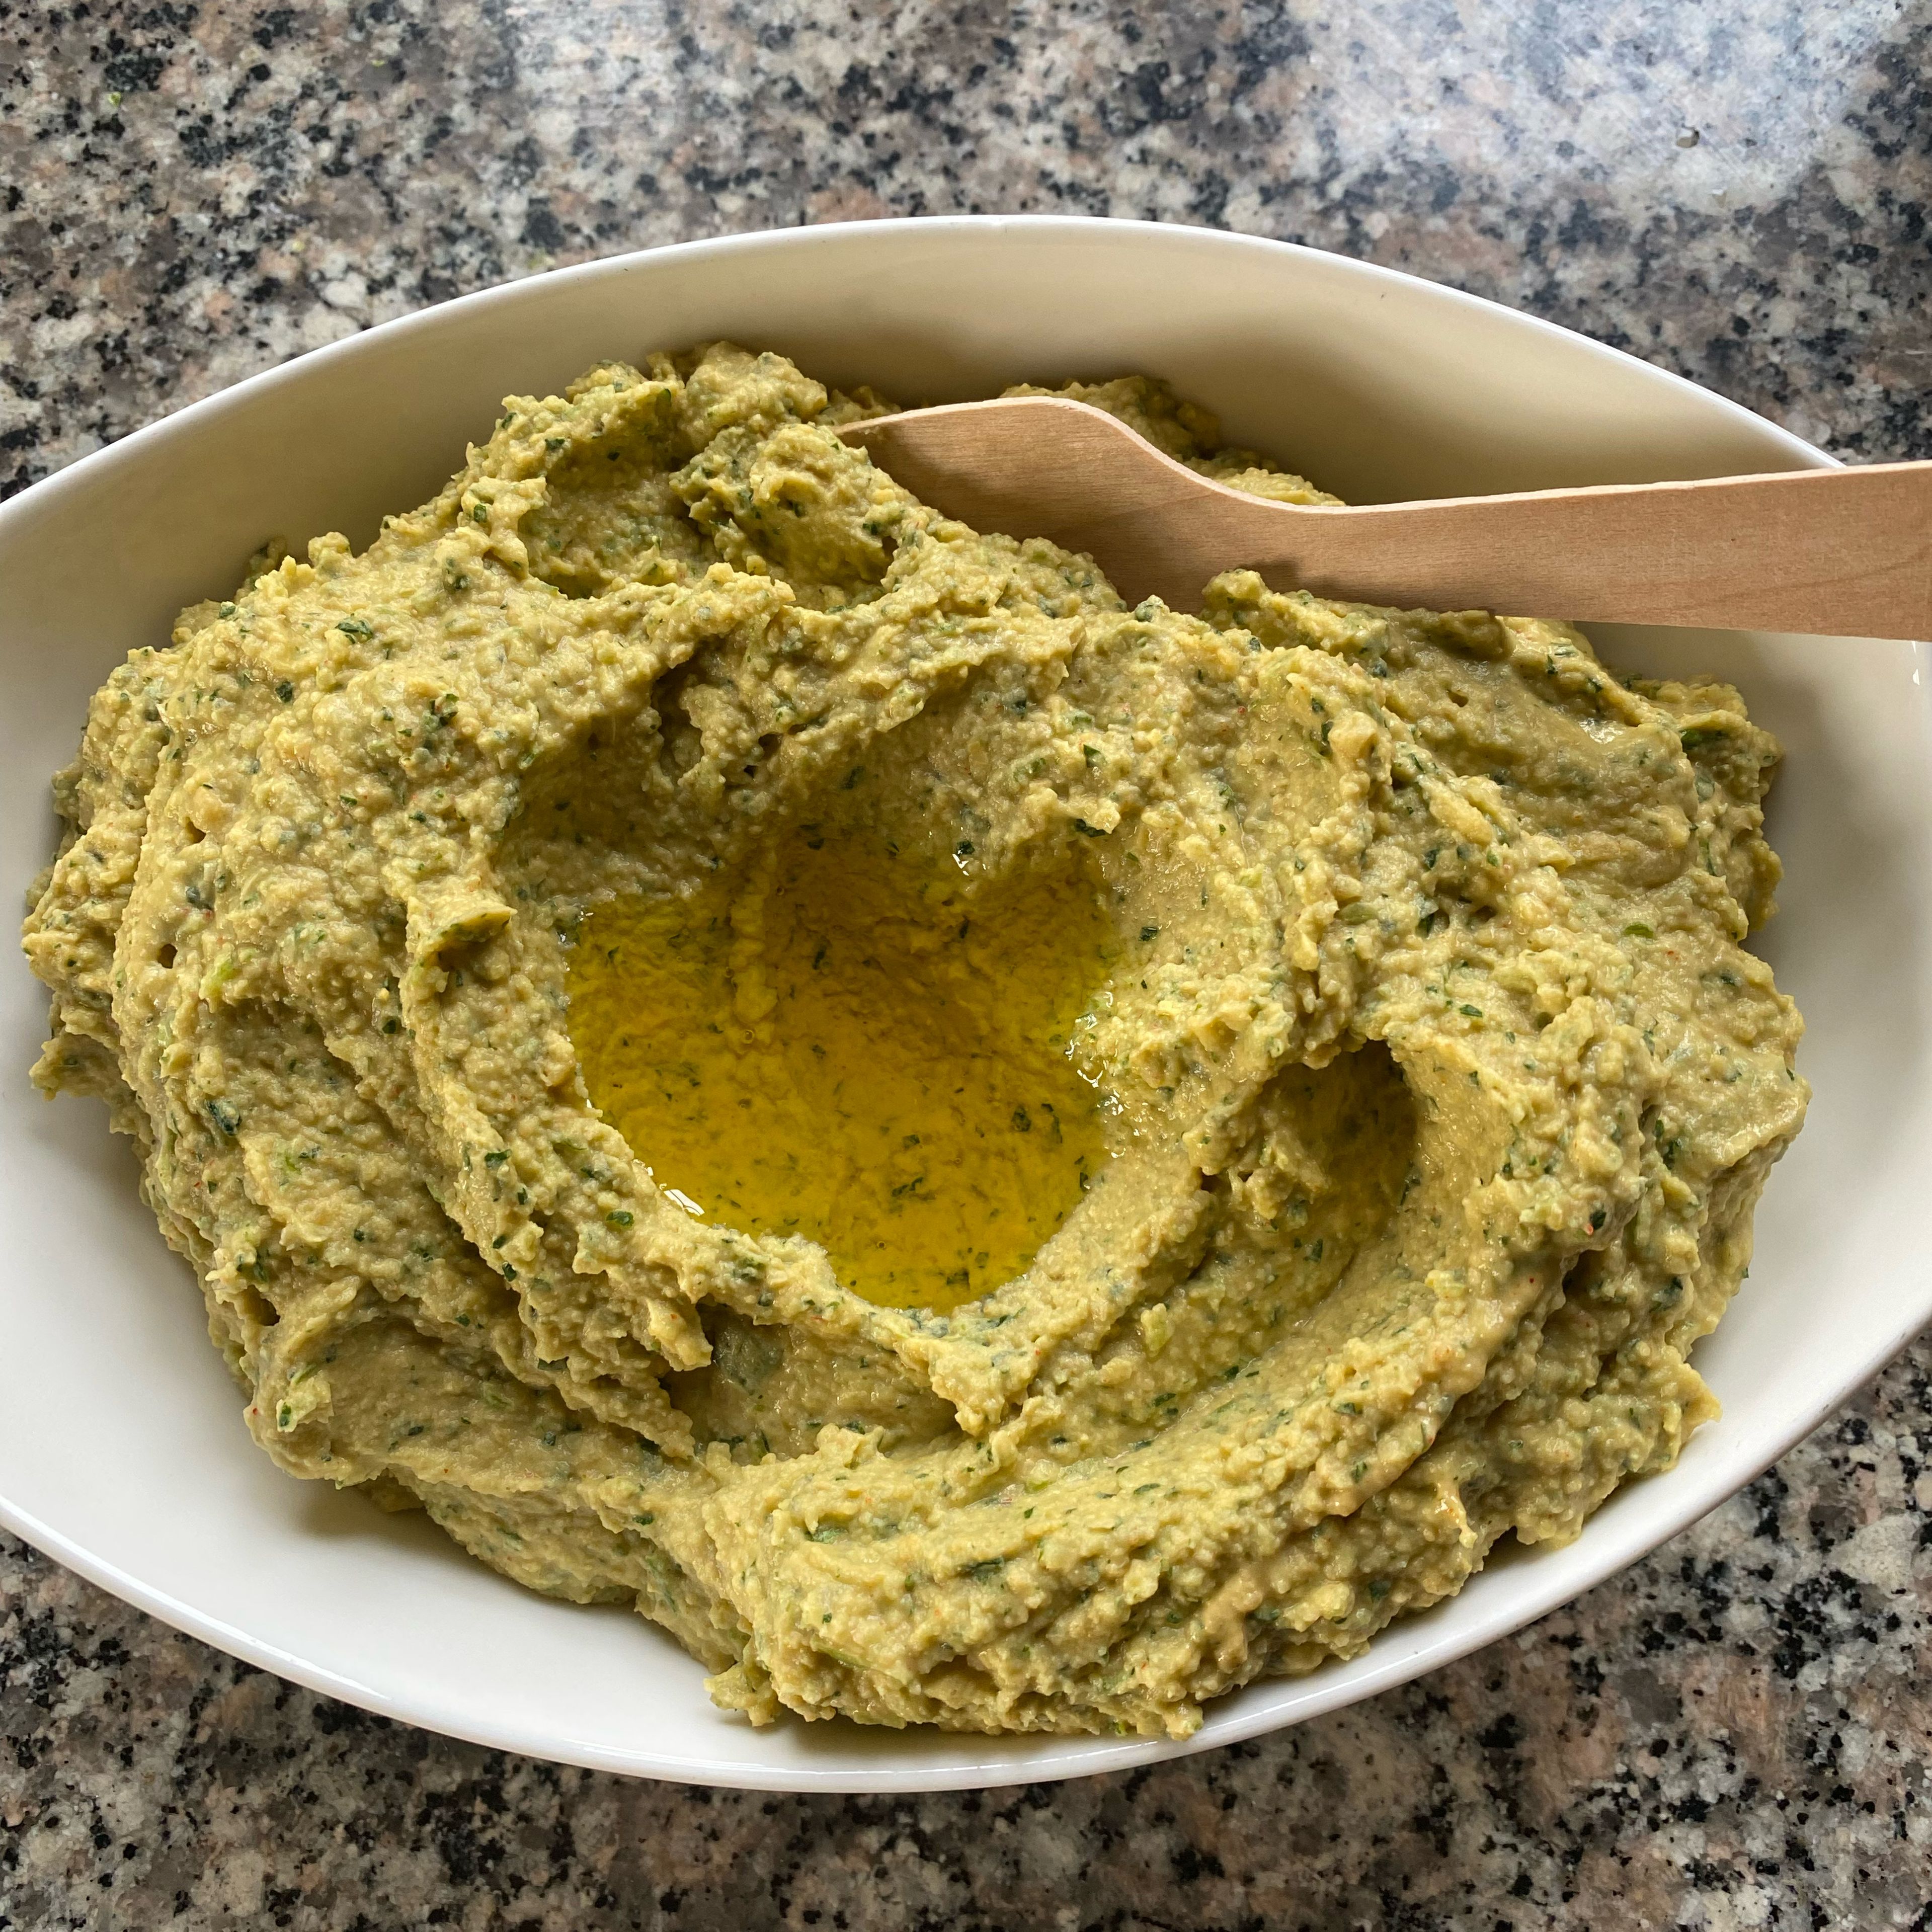 Cookit Universalmesser entnehmen, Petersilien-Hummus mit dem Cookit Küchenspatel in eine Schüssel umfüllen, mit Olivenöl garnieren.